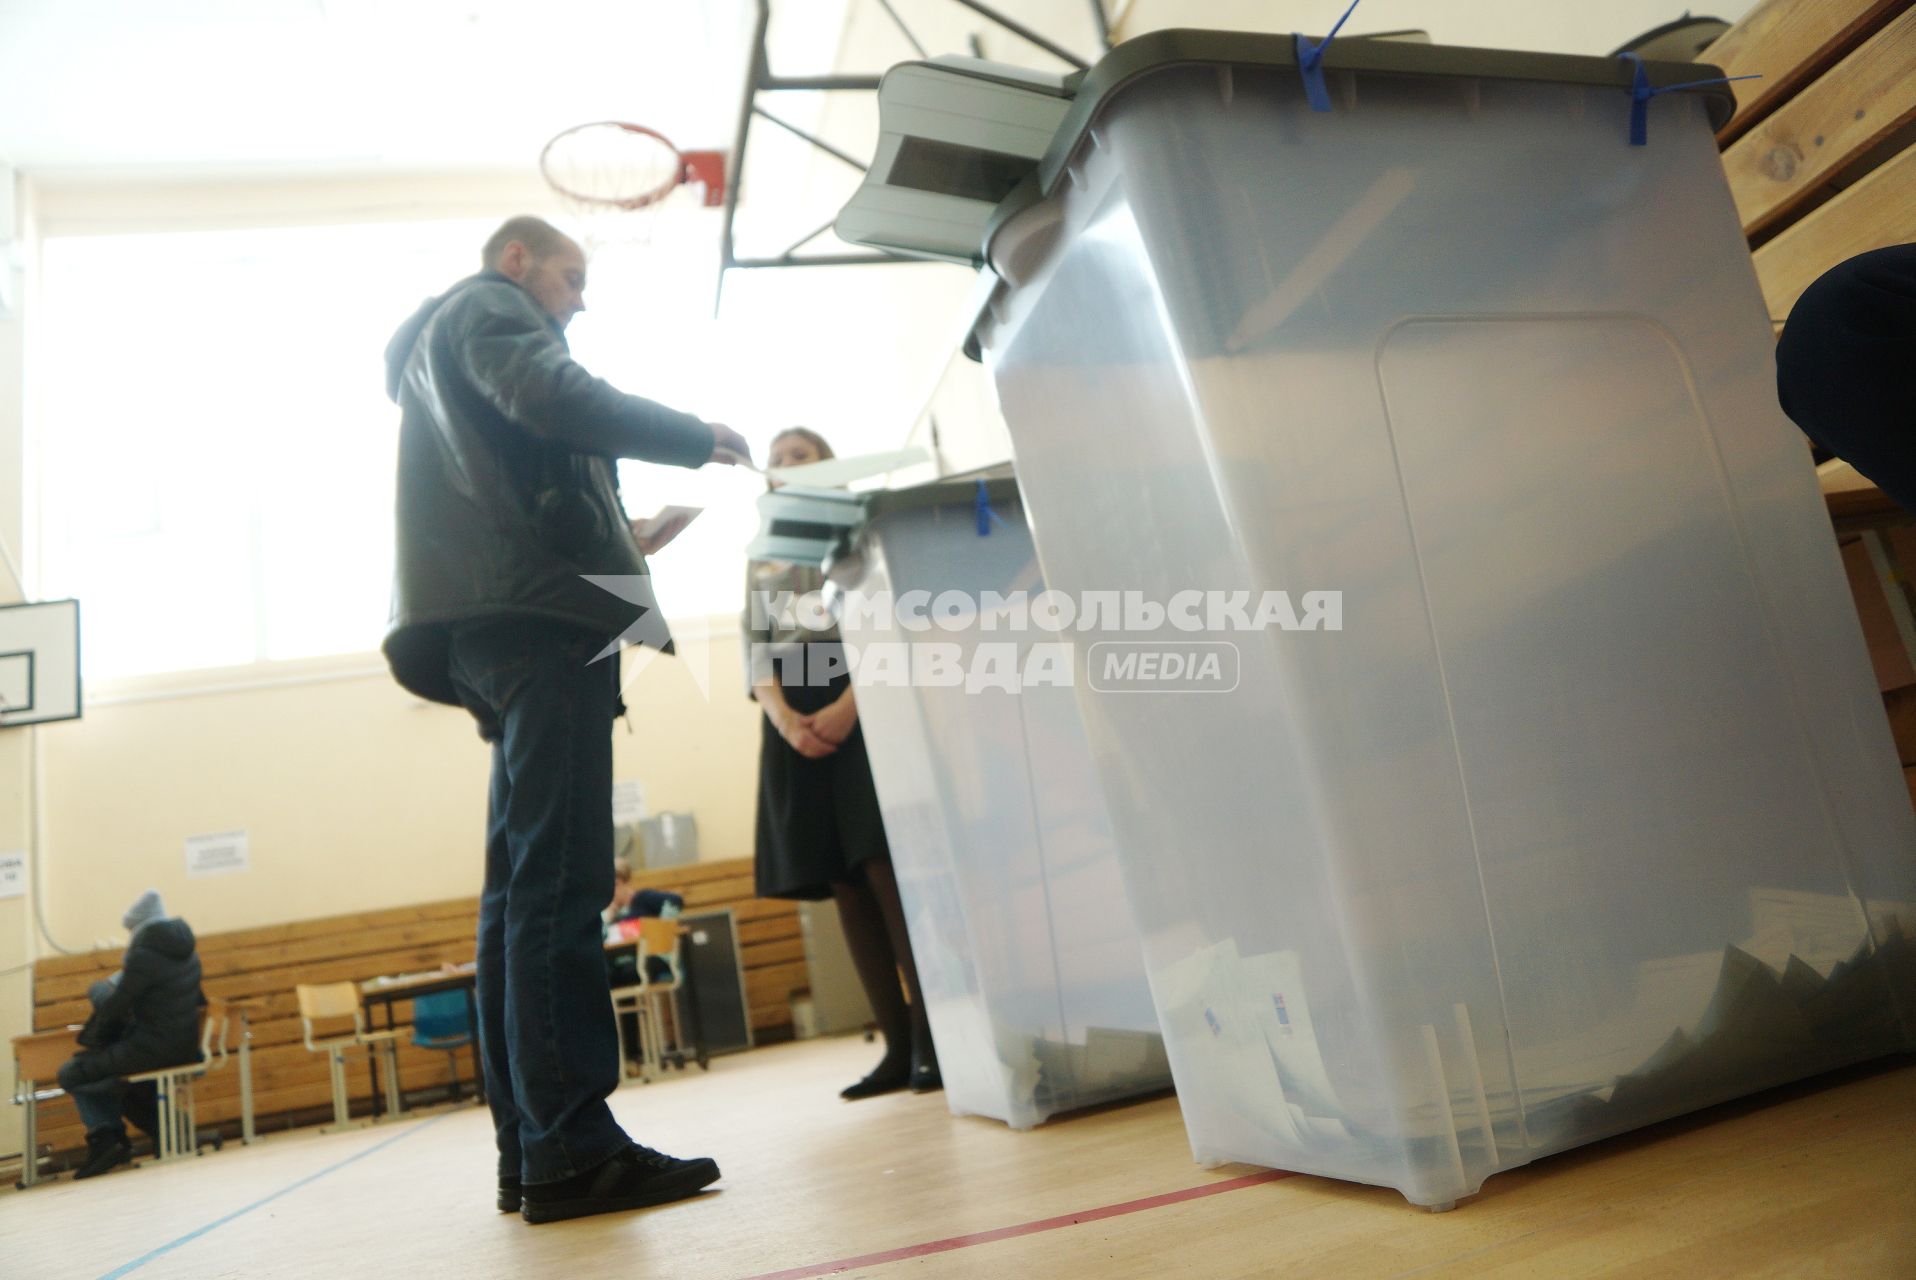 Екатеринбург. Урна для голосования на избирательном участке во время выборов президента России в 2018г